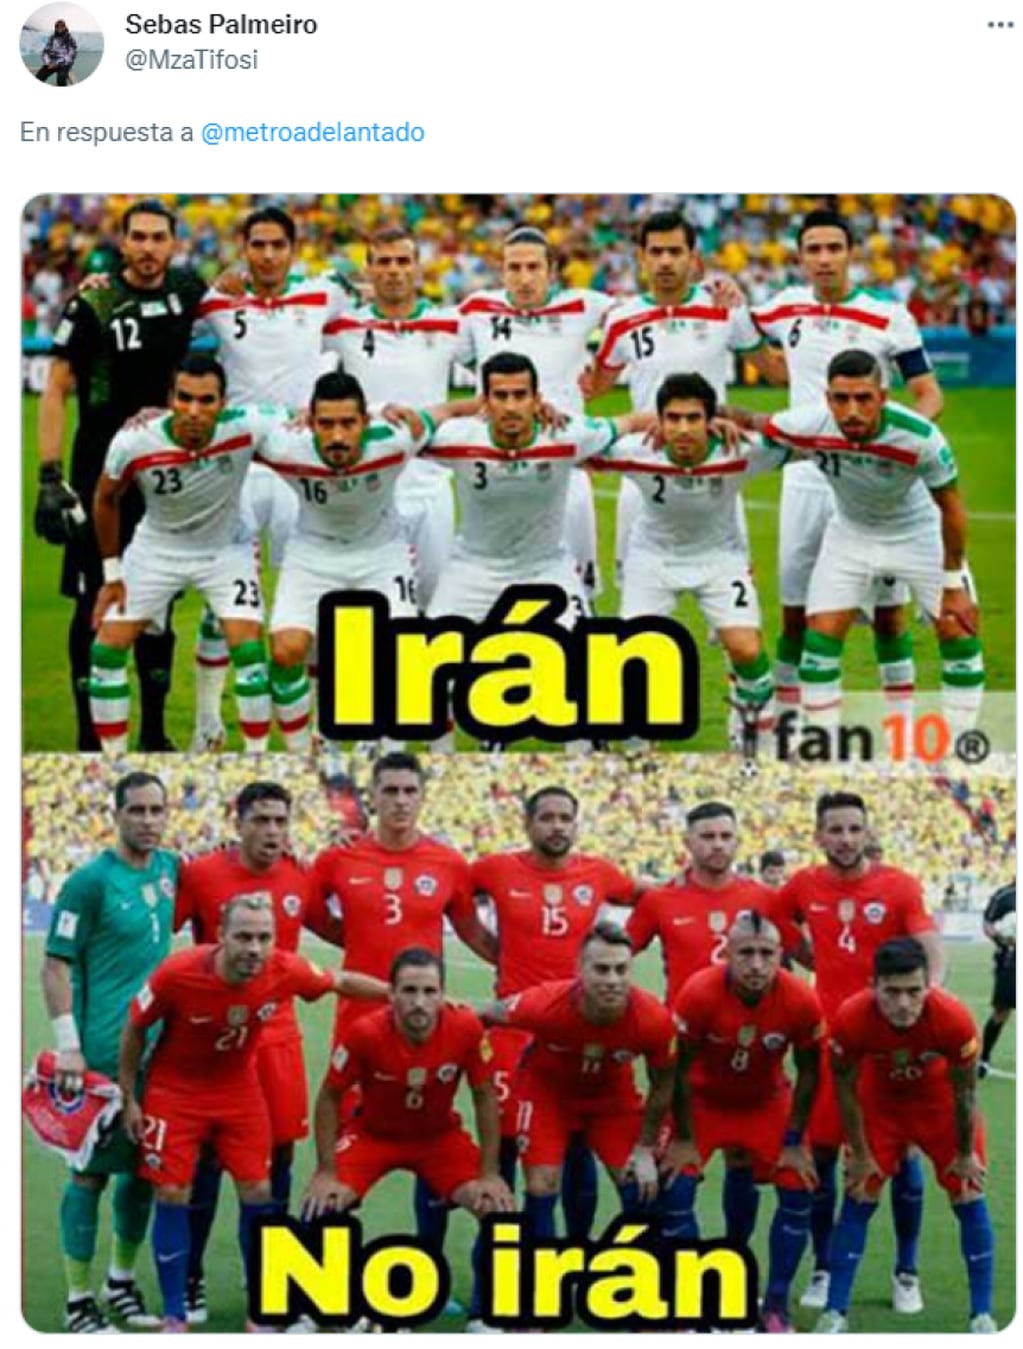 El juego de palabras haciendo alusión a que Irán estará en el Mundial y Chile no.